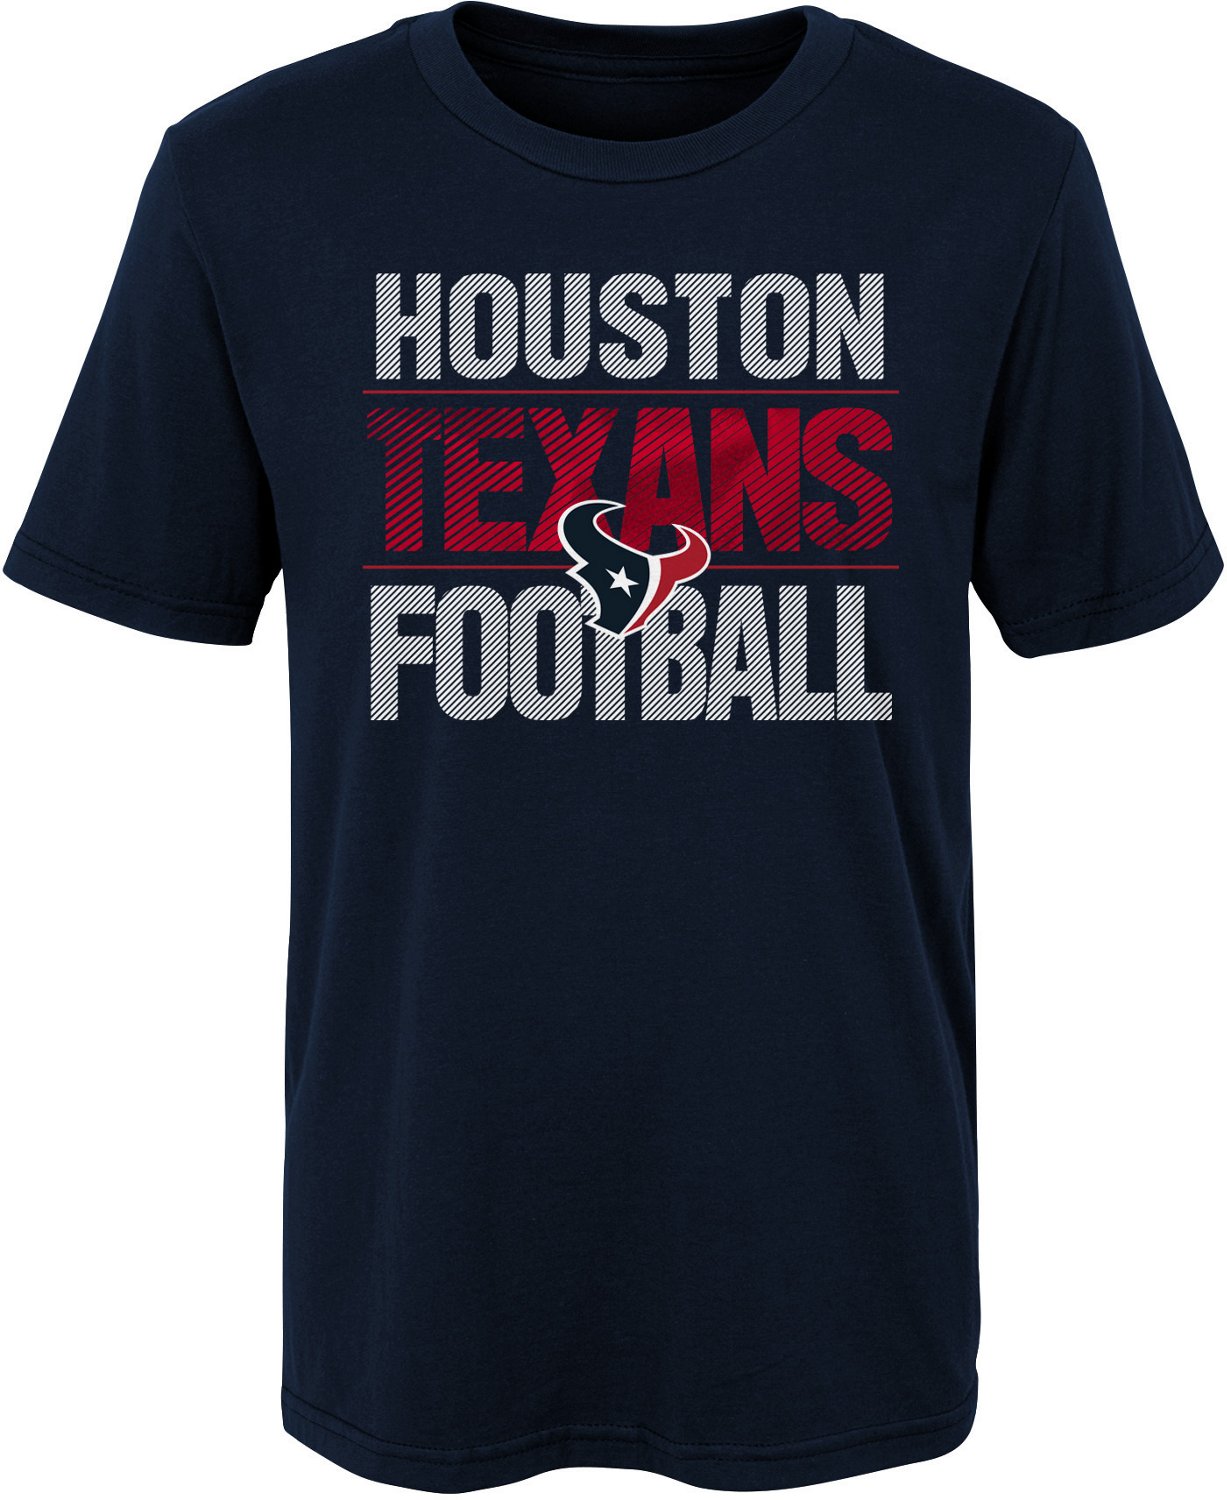 texans football shirts